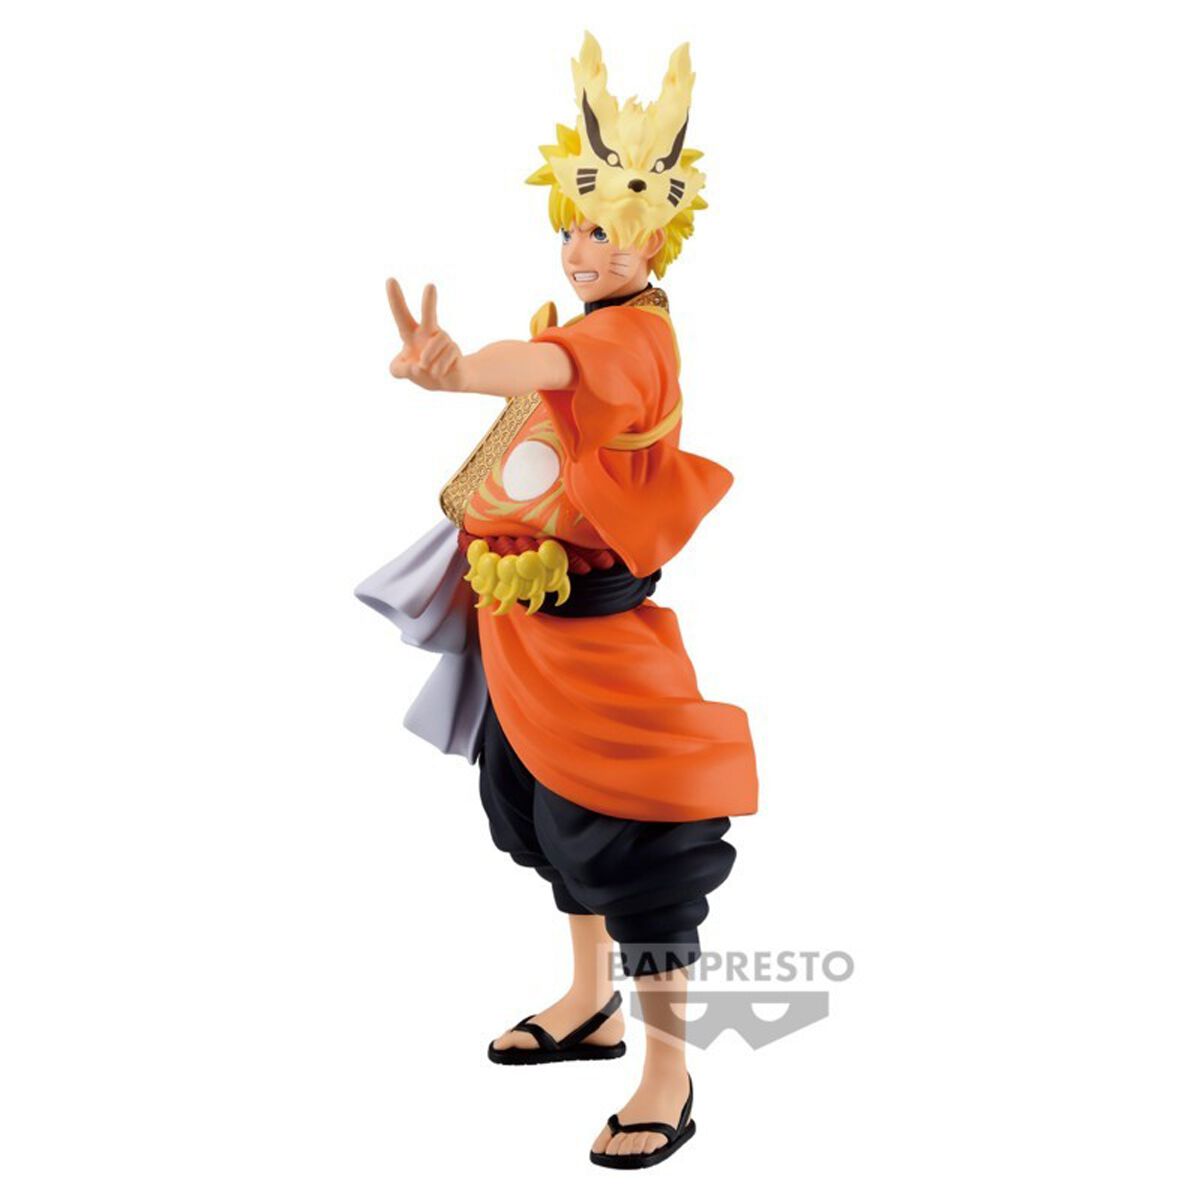 Naruto Shippuden - Figurine Naruto Uzumaki - 20th Anniversary Costume